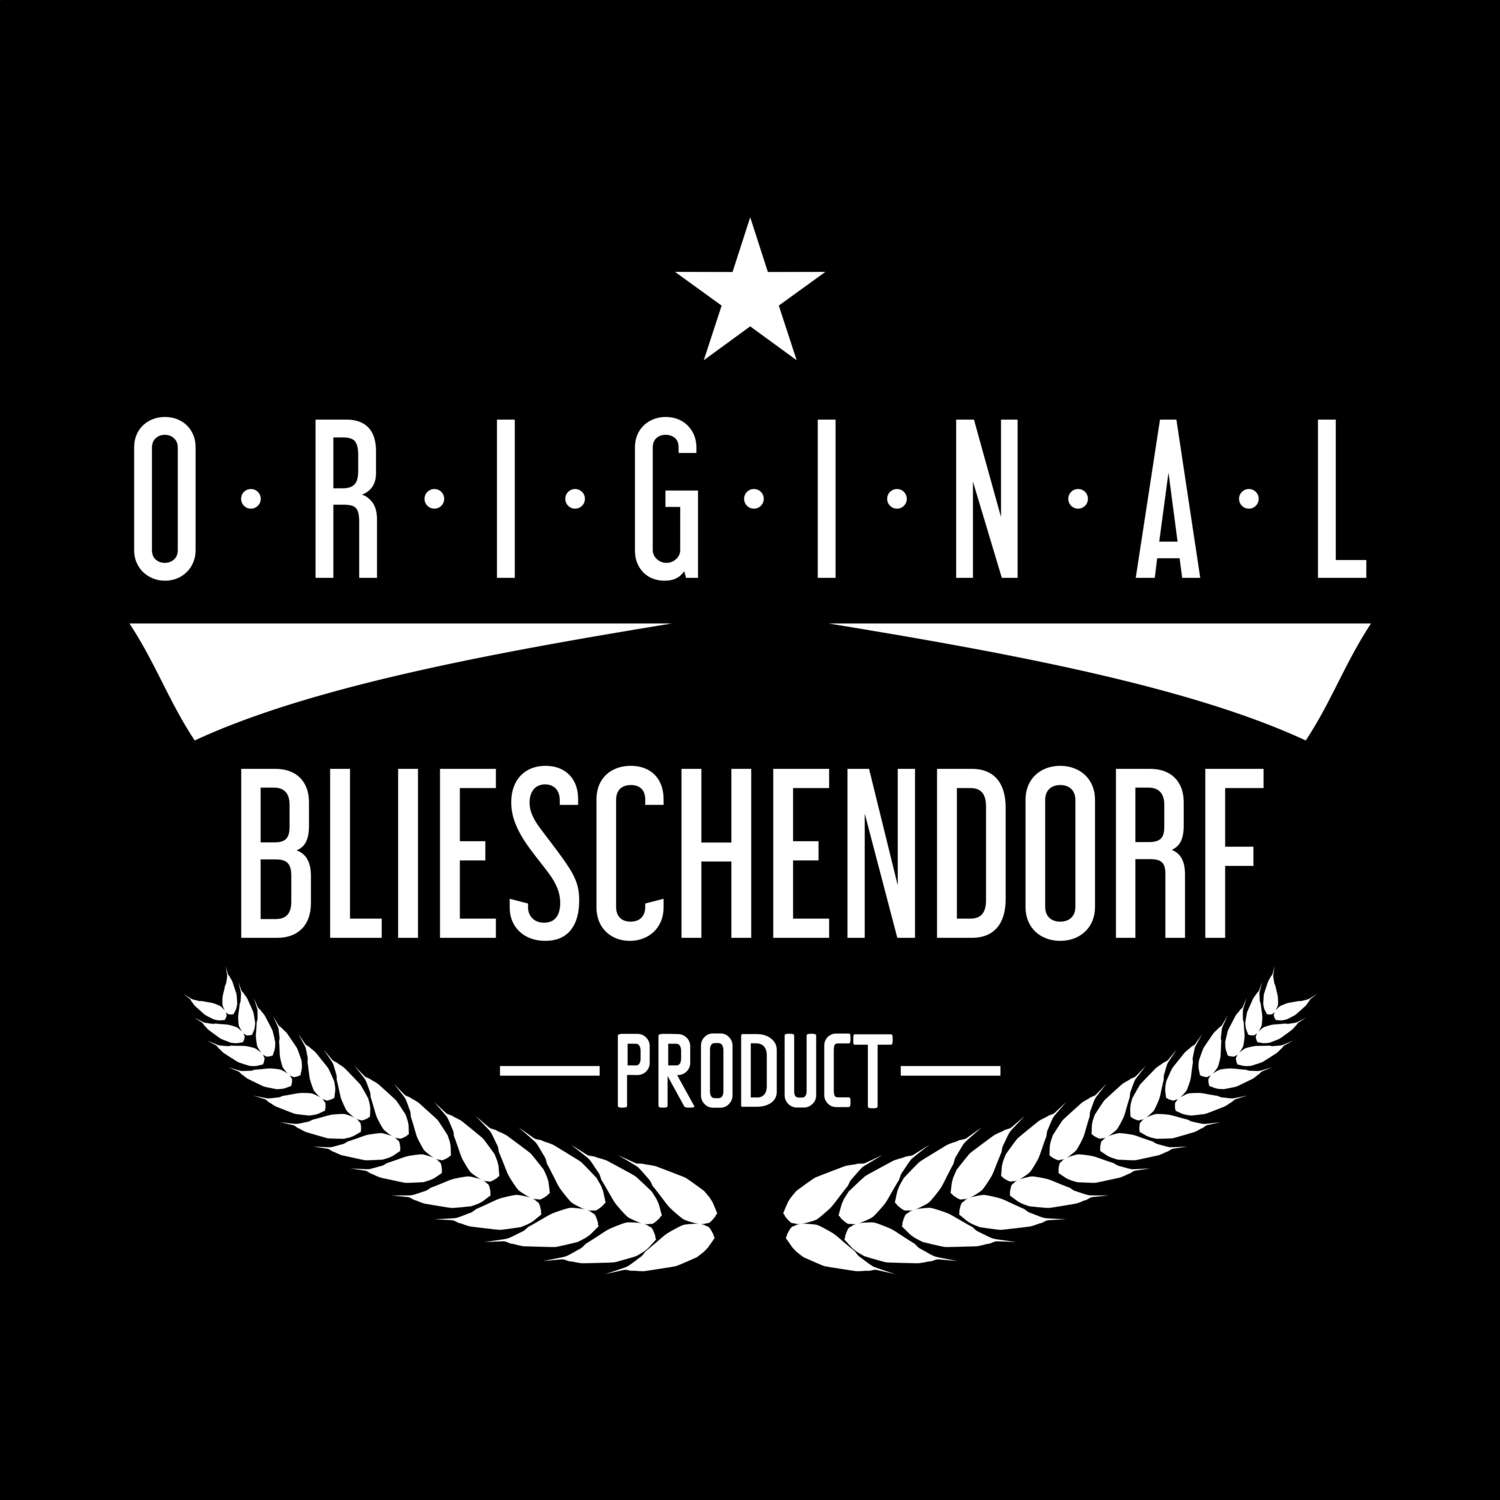 Blieschendorf T-Shirt »Original Product«